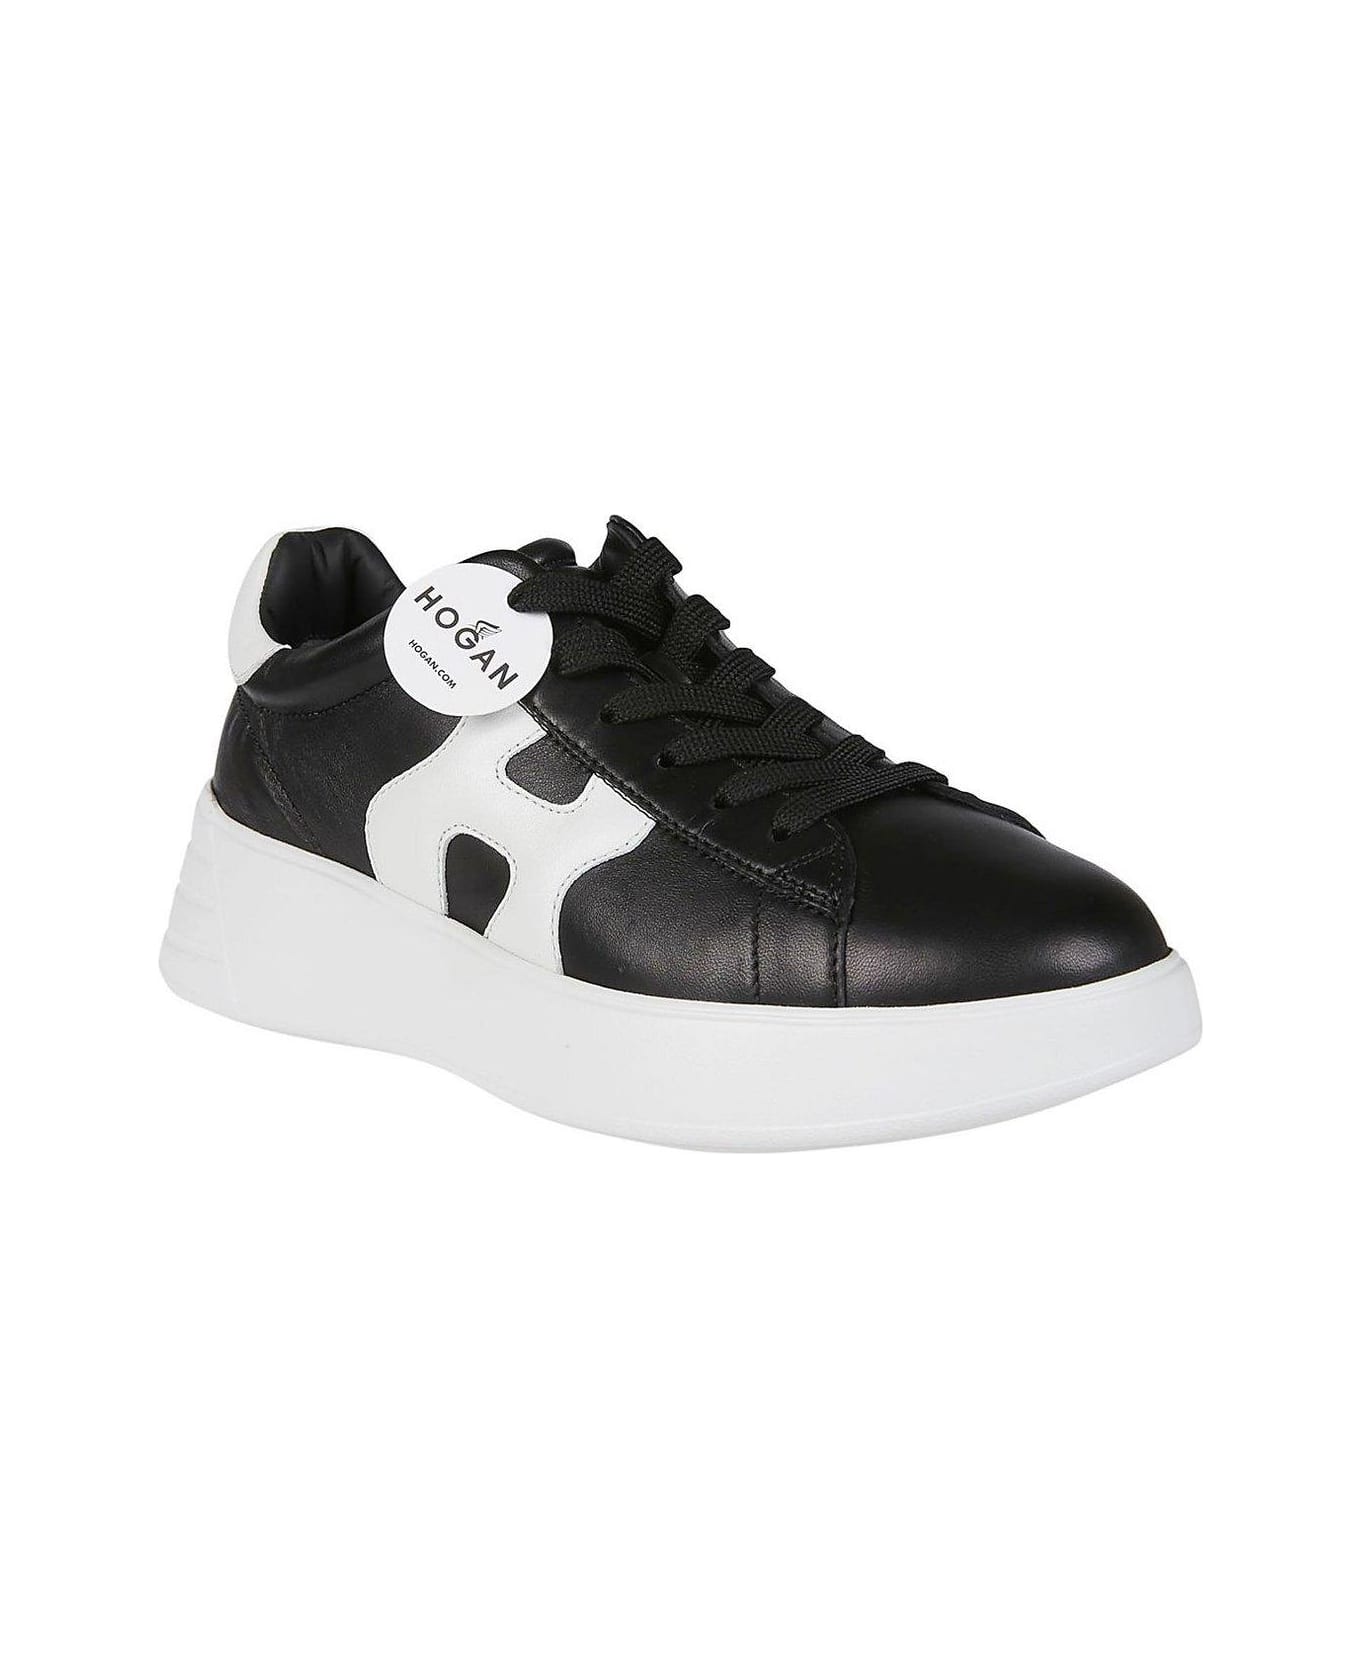 Hogan Rebel H562 Sneakers - BLACK